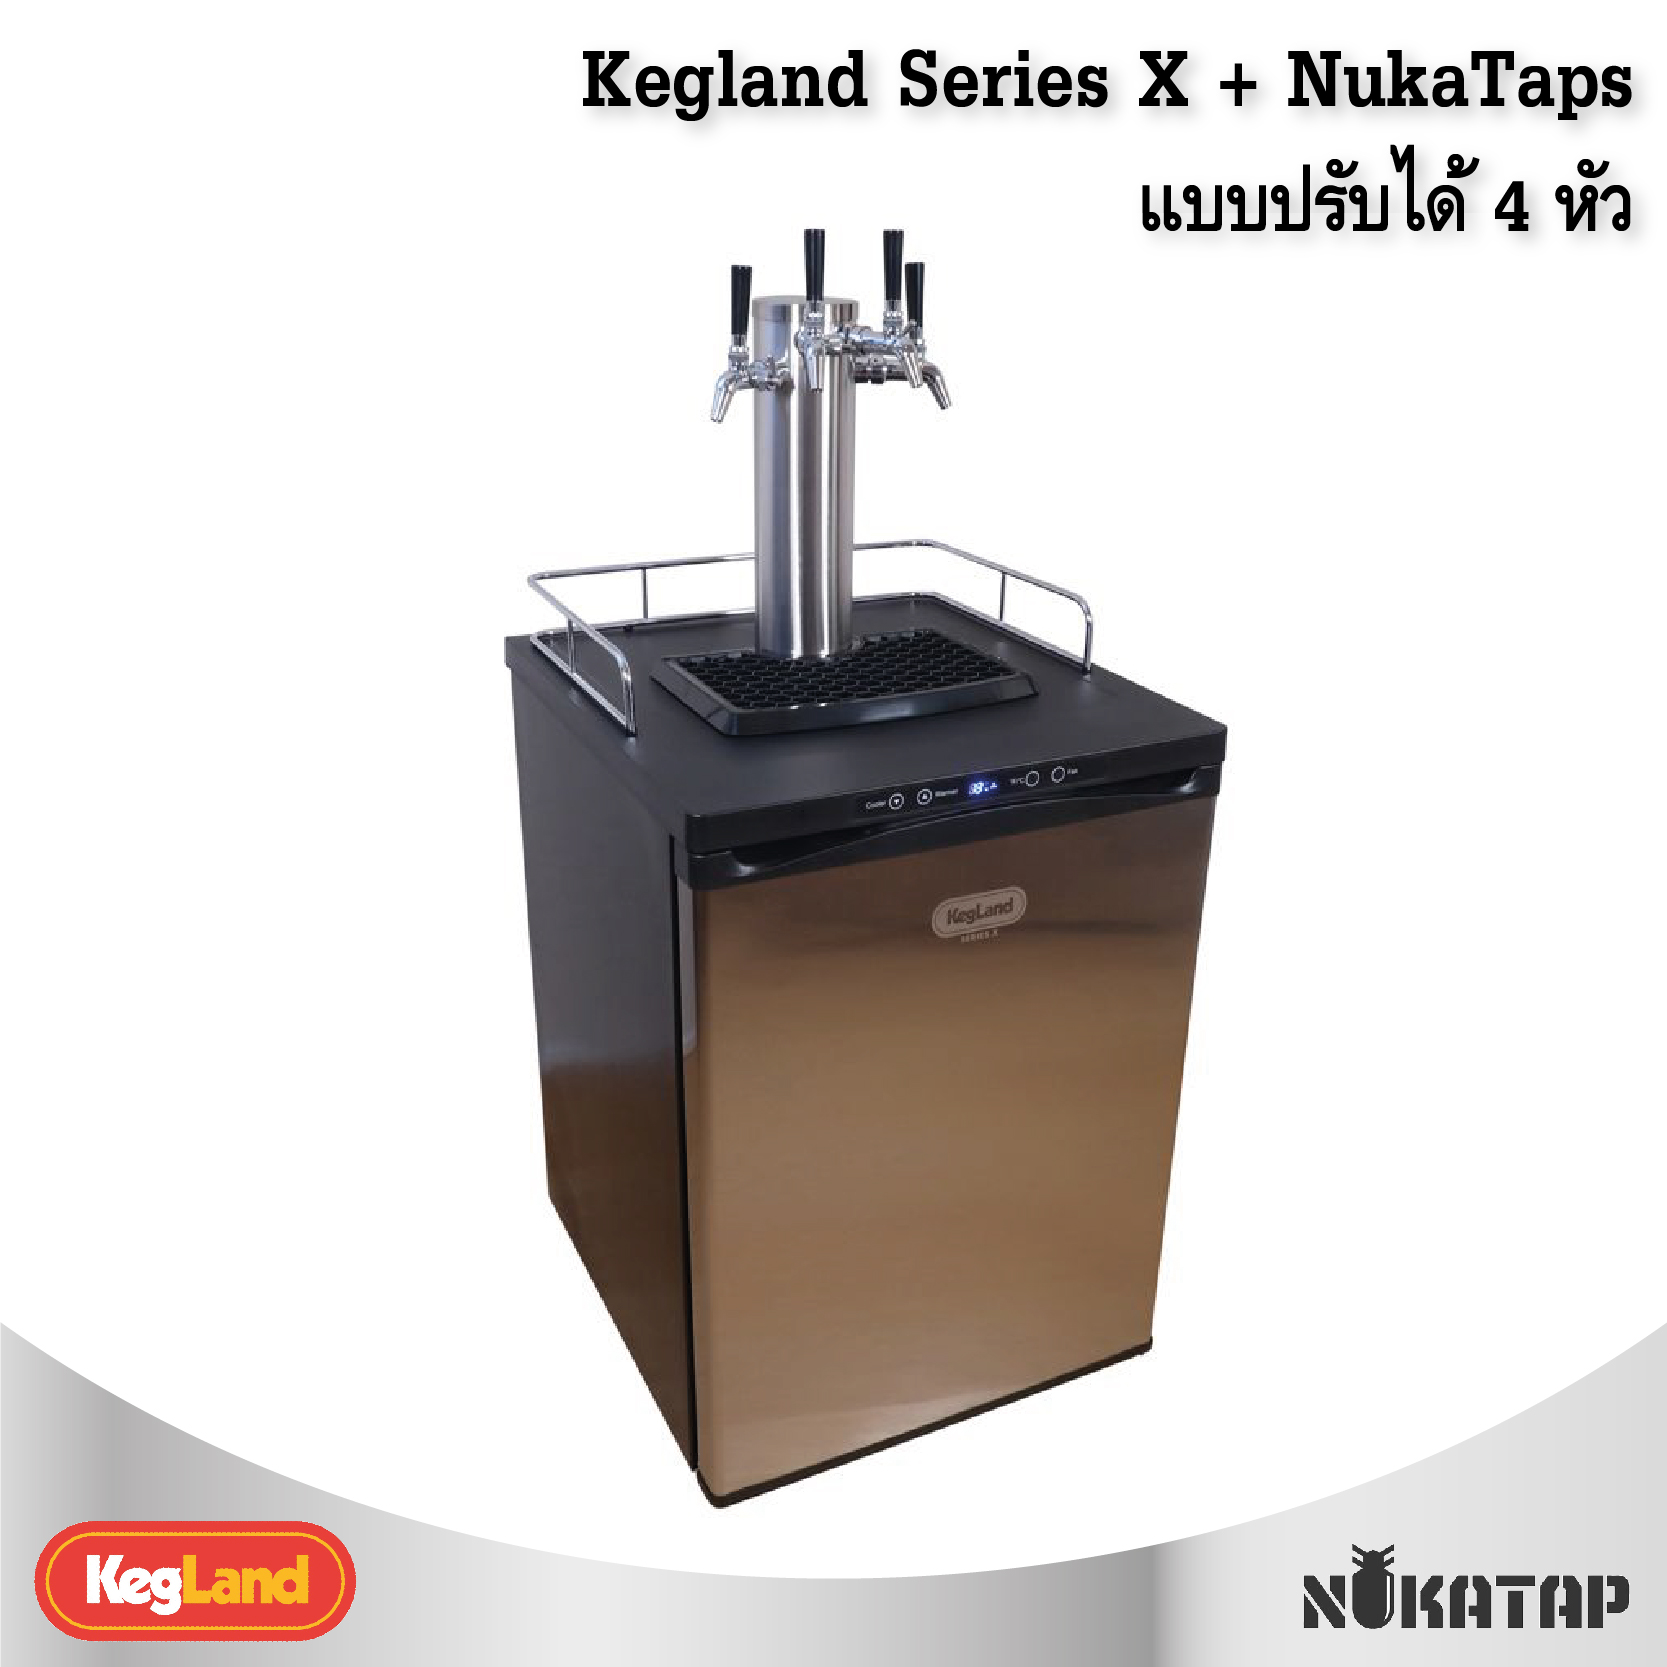 ตู้กดเครื่องดื่ม 4 หัวกด Kegland Series X + NukaTaps